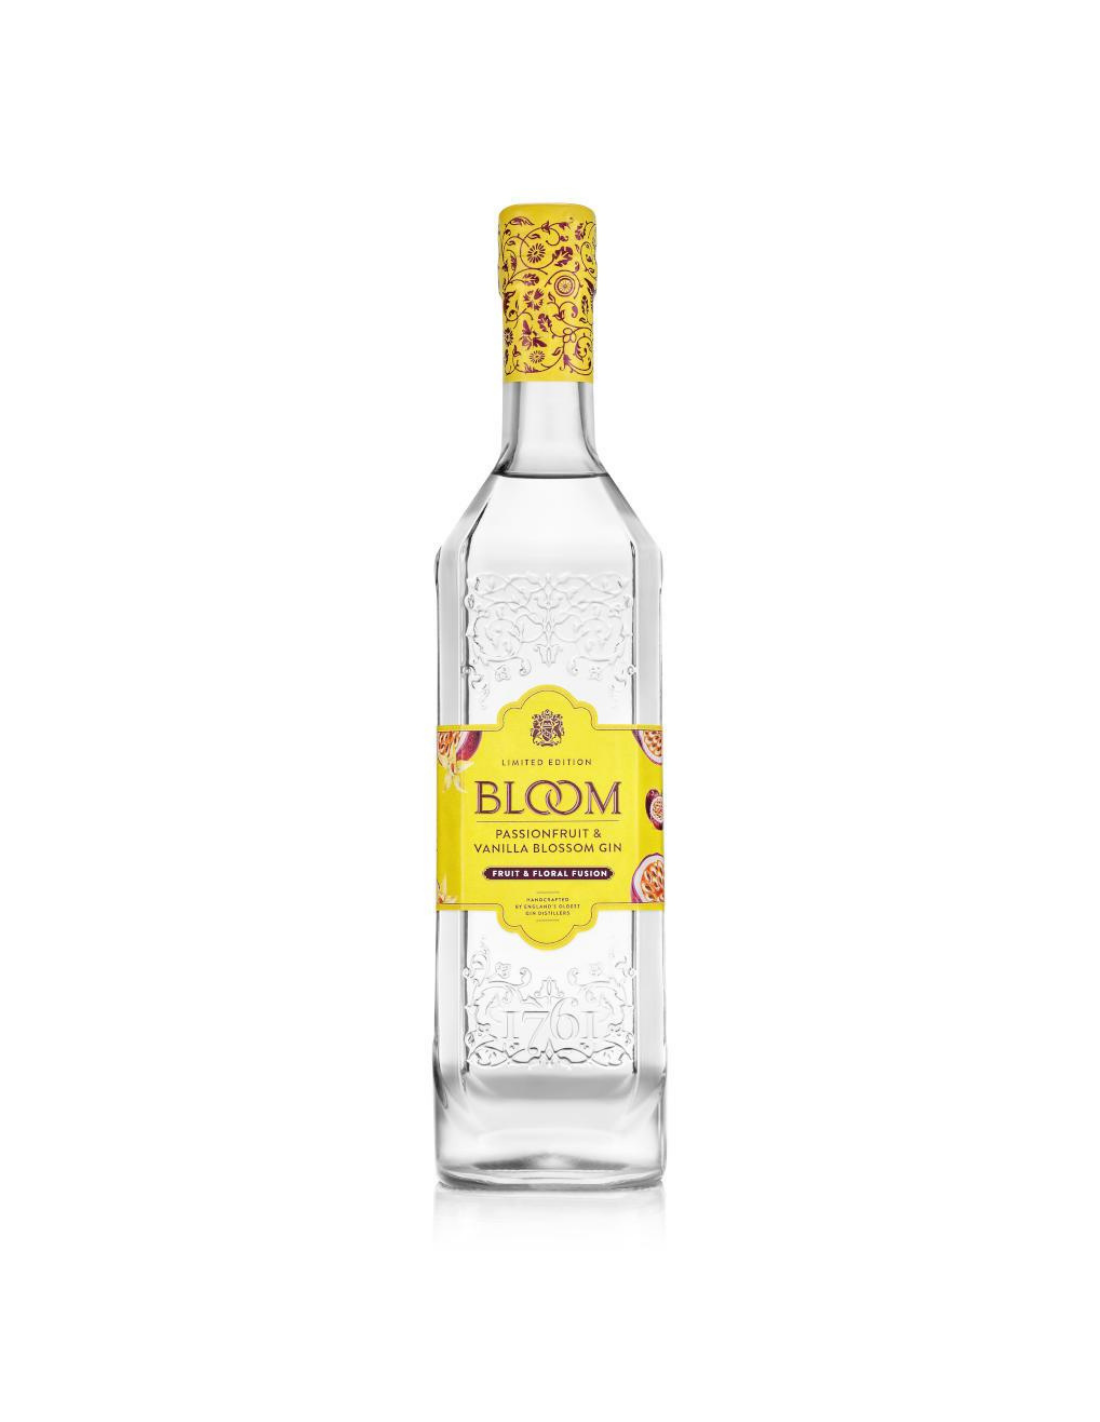 Gin Bloom Passionfruit & Vanilla Blossom, 40% alc., 0.7L, Anglia alcooldiscount.ro